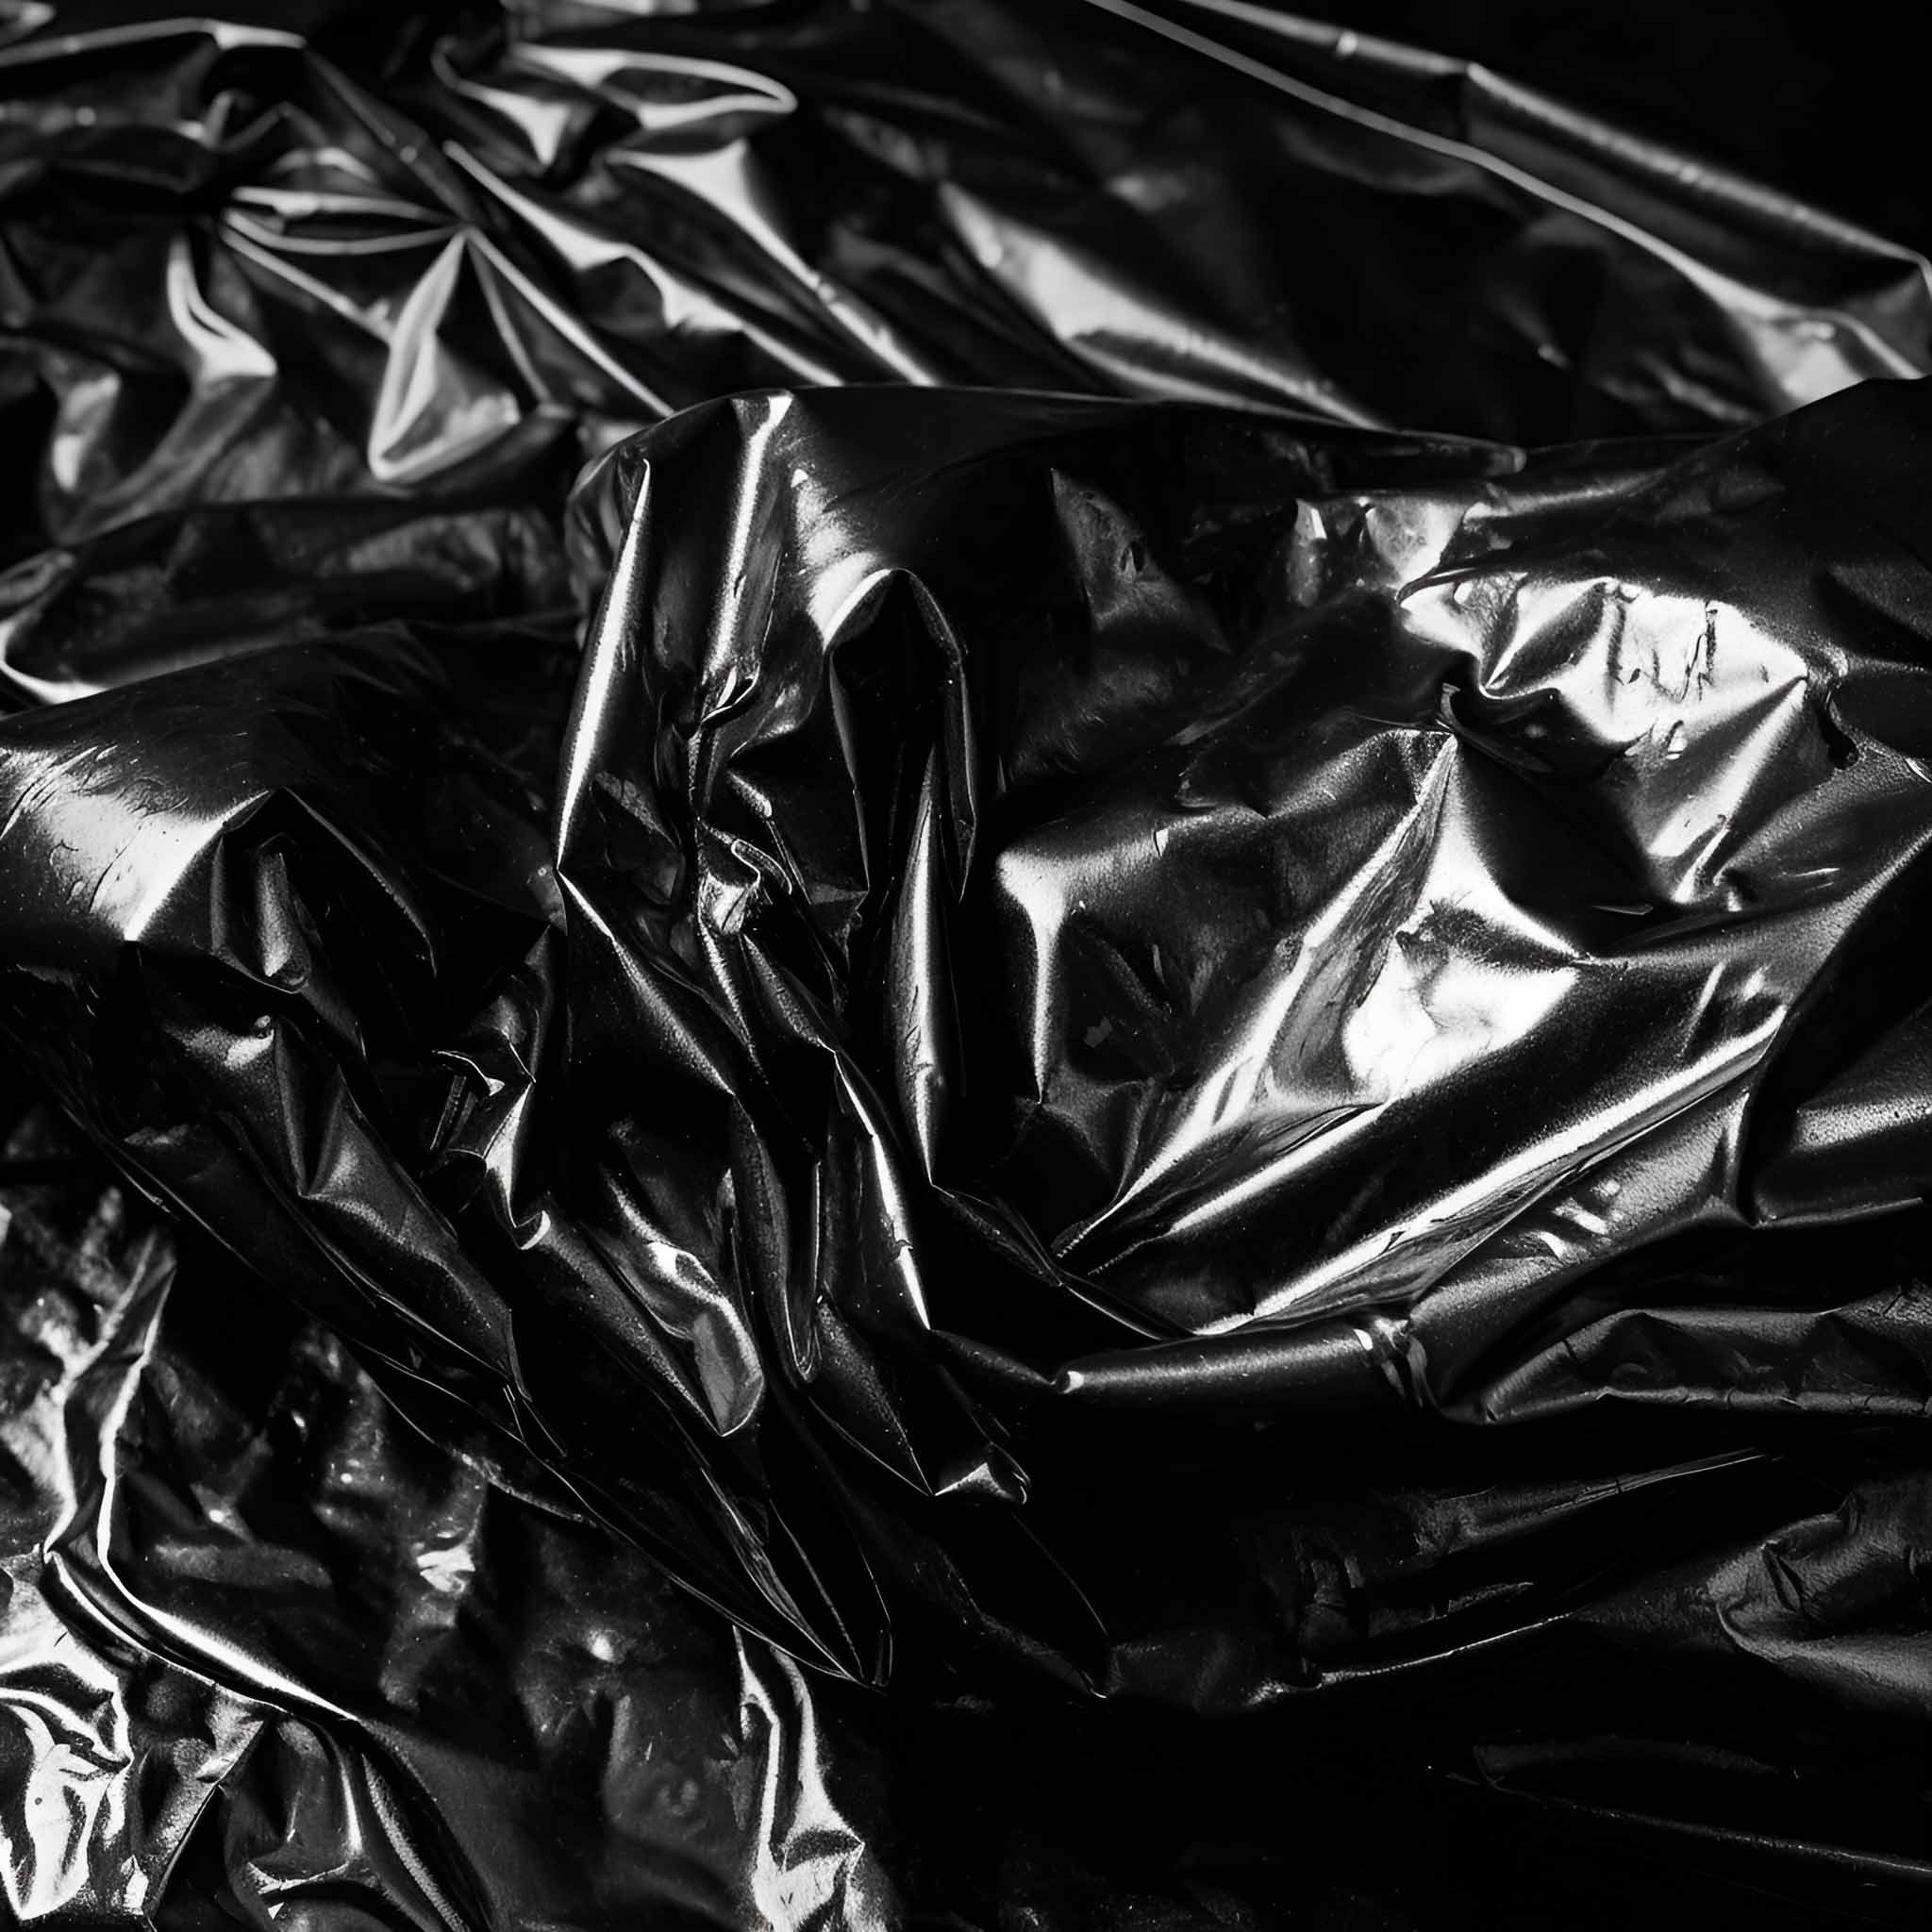 Black Foil Shiny Textures preview image.